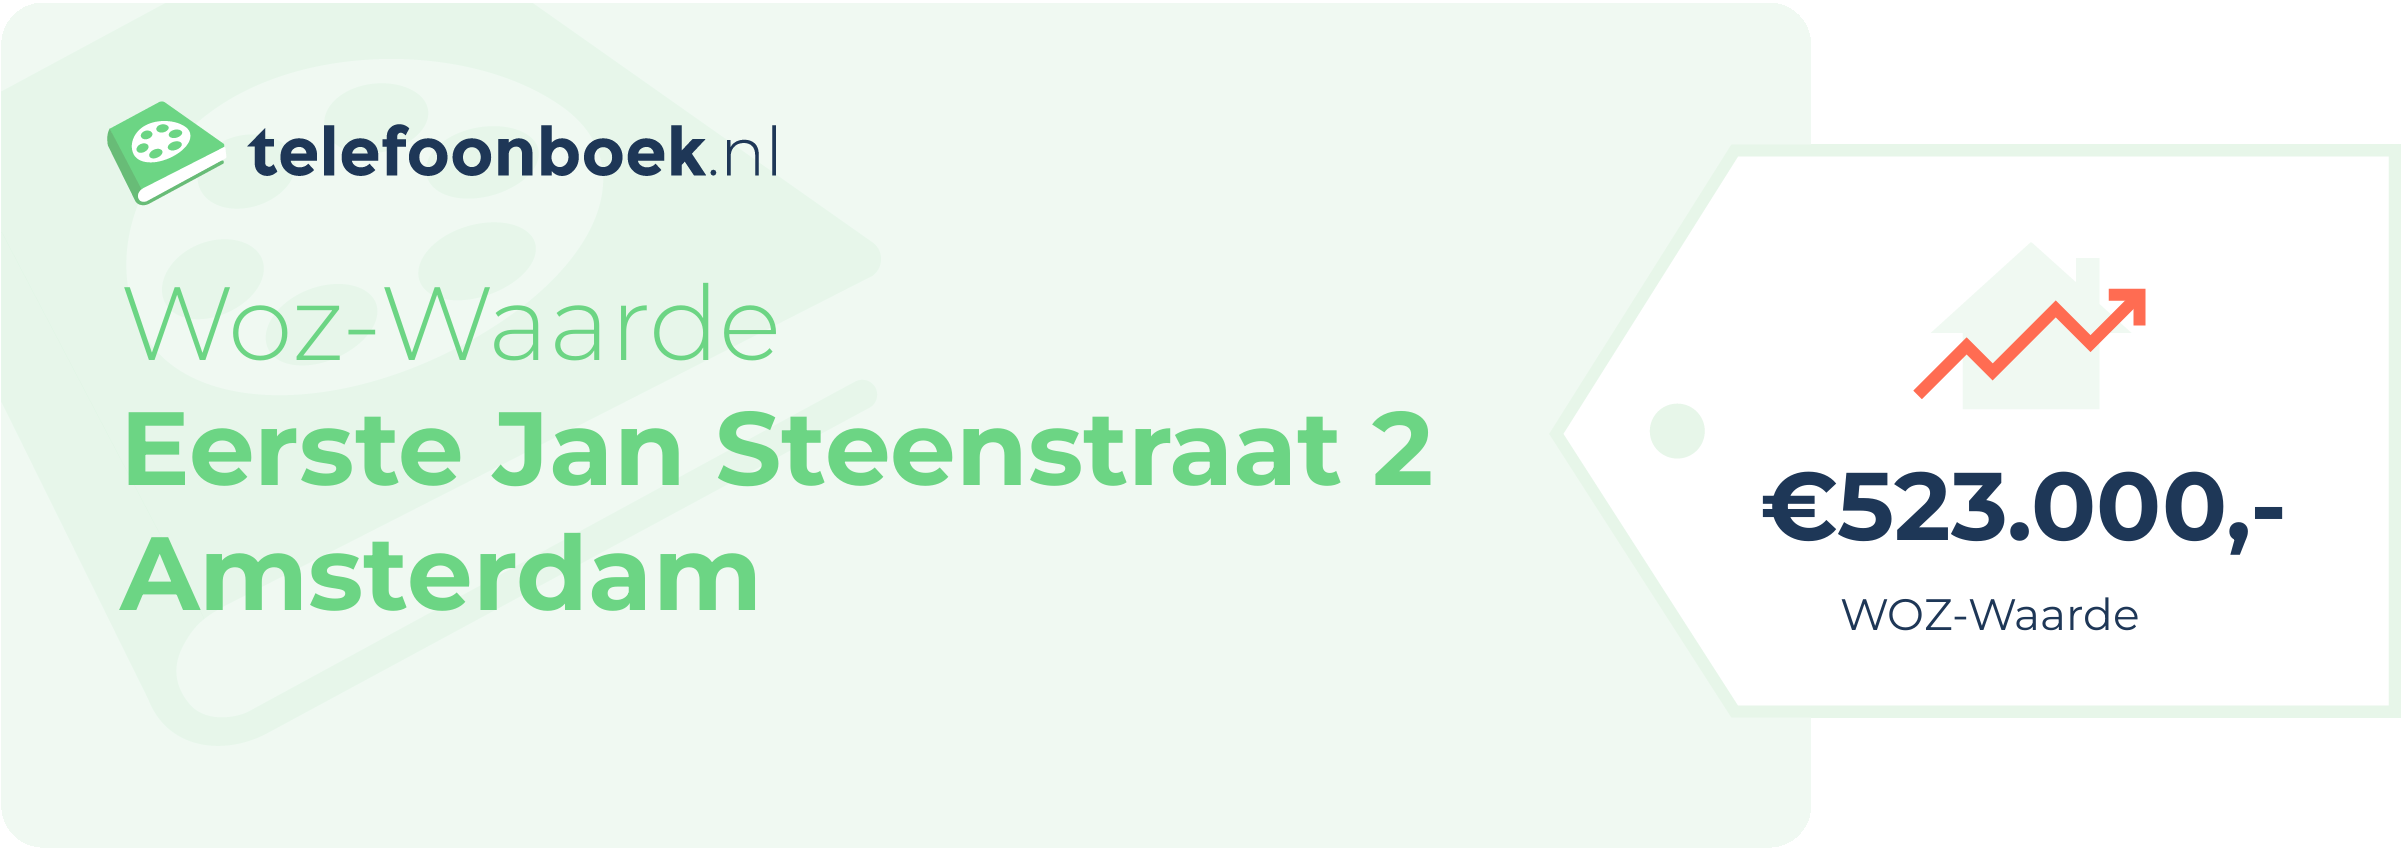 WOZ-waarde Eerste Jan Steenstraat 2 Amsterdam